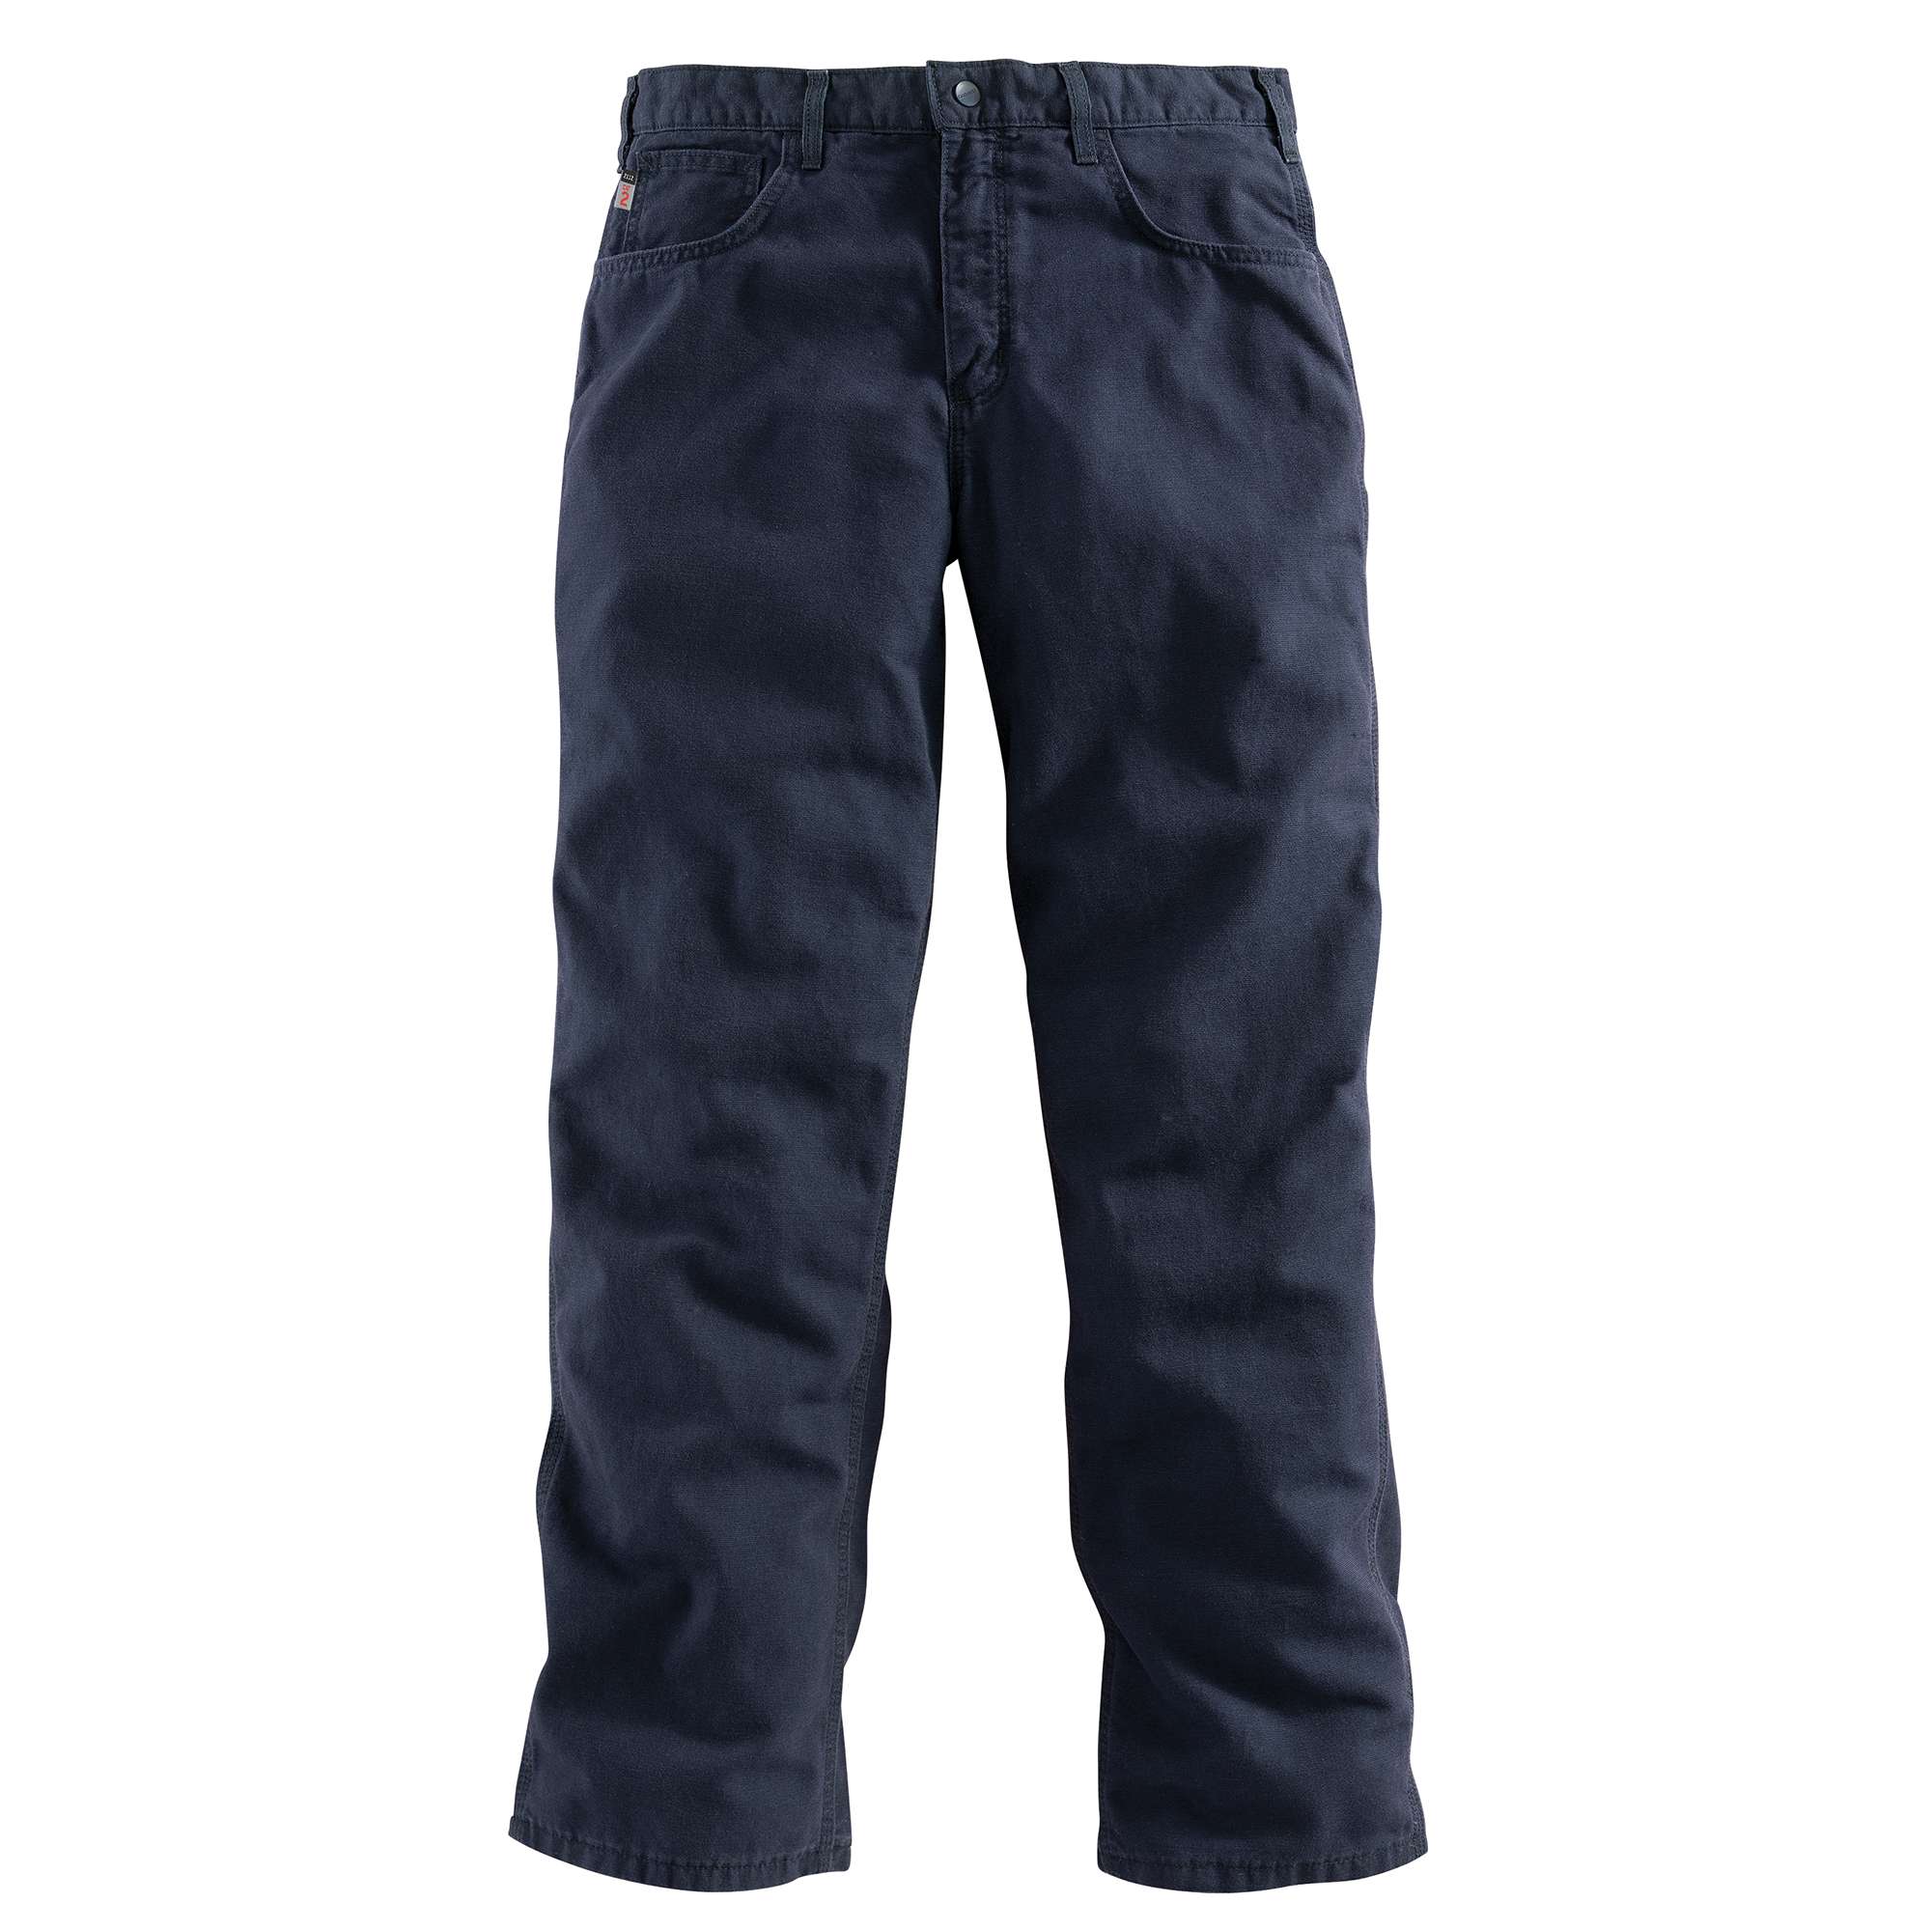 Navy Bootleg Pants - Lowes Menswear